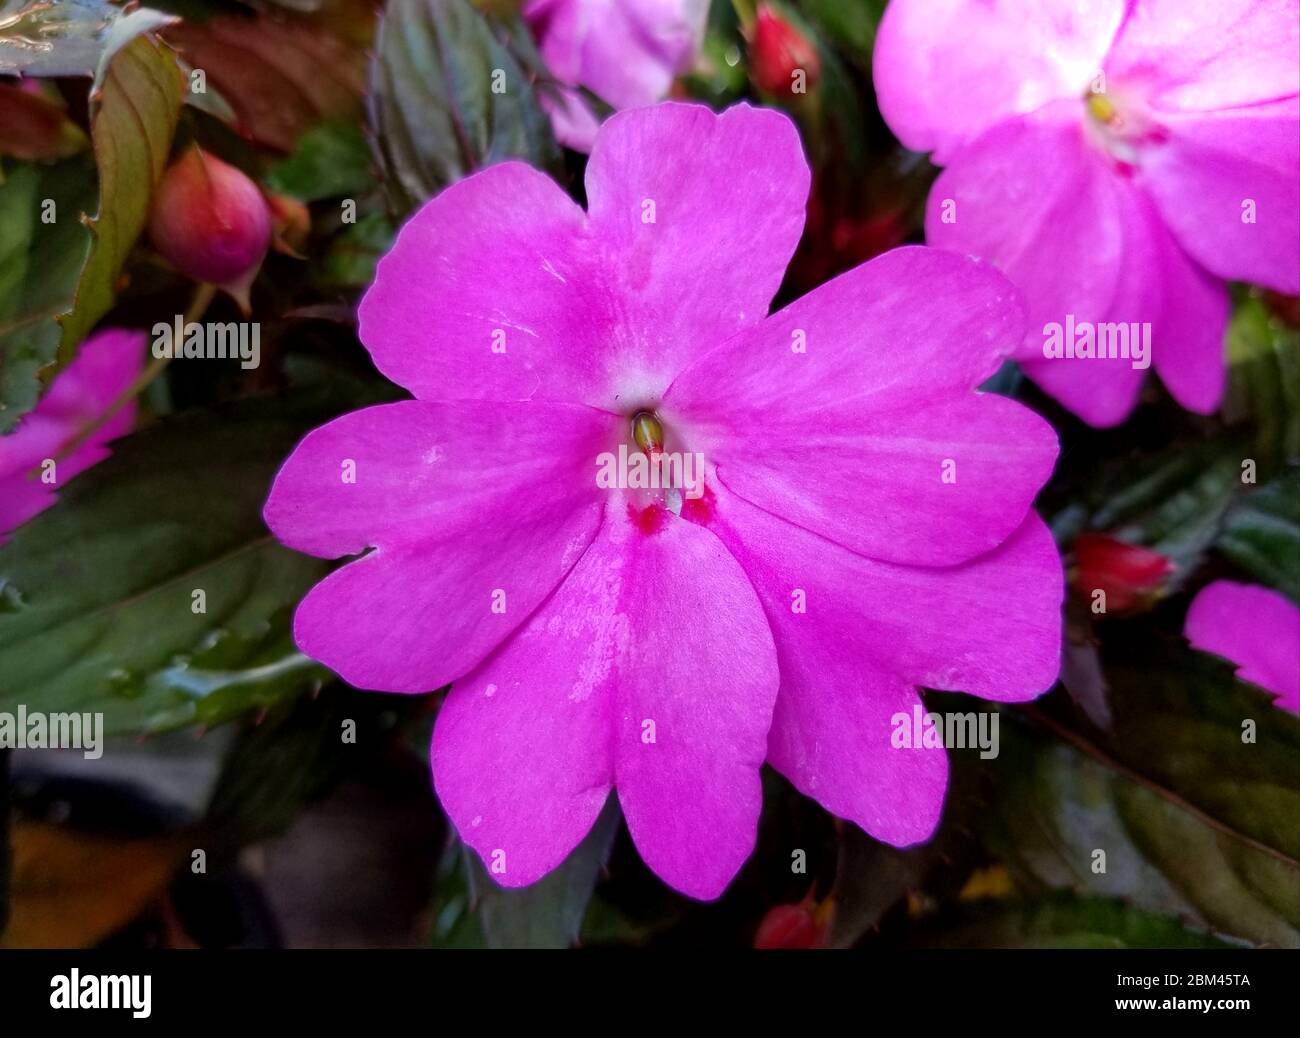 Bella viola Nuova Guinea Impatiens fiore a piena fioritura Foto Stock